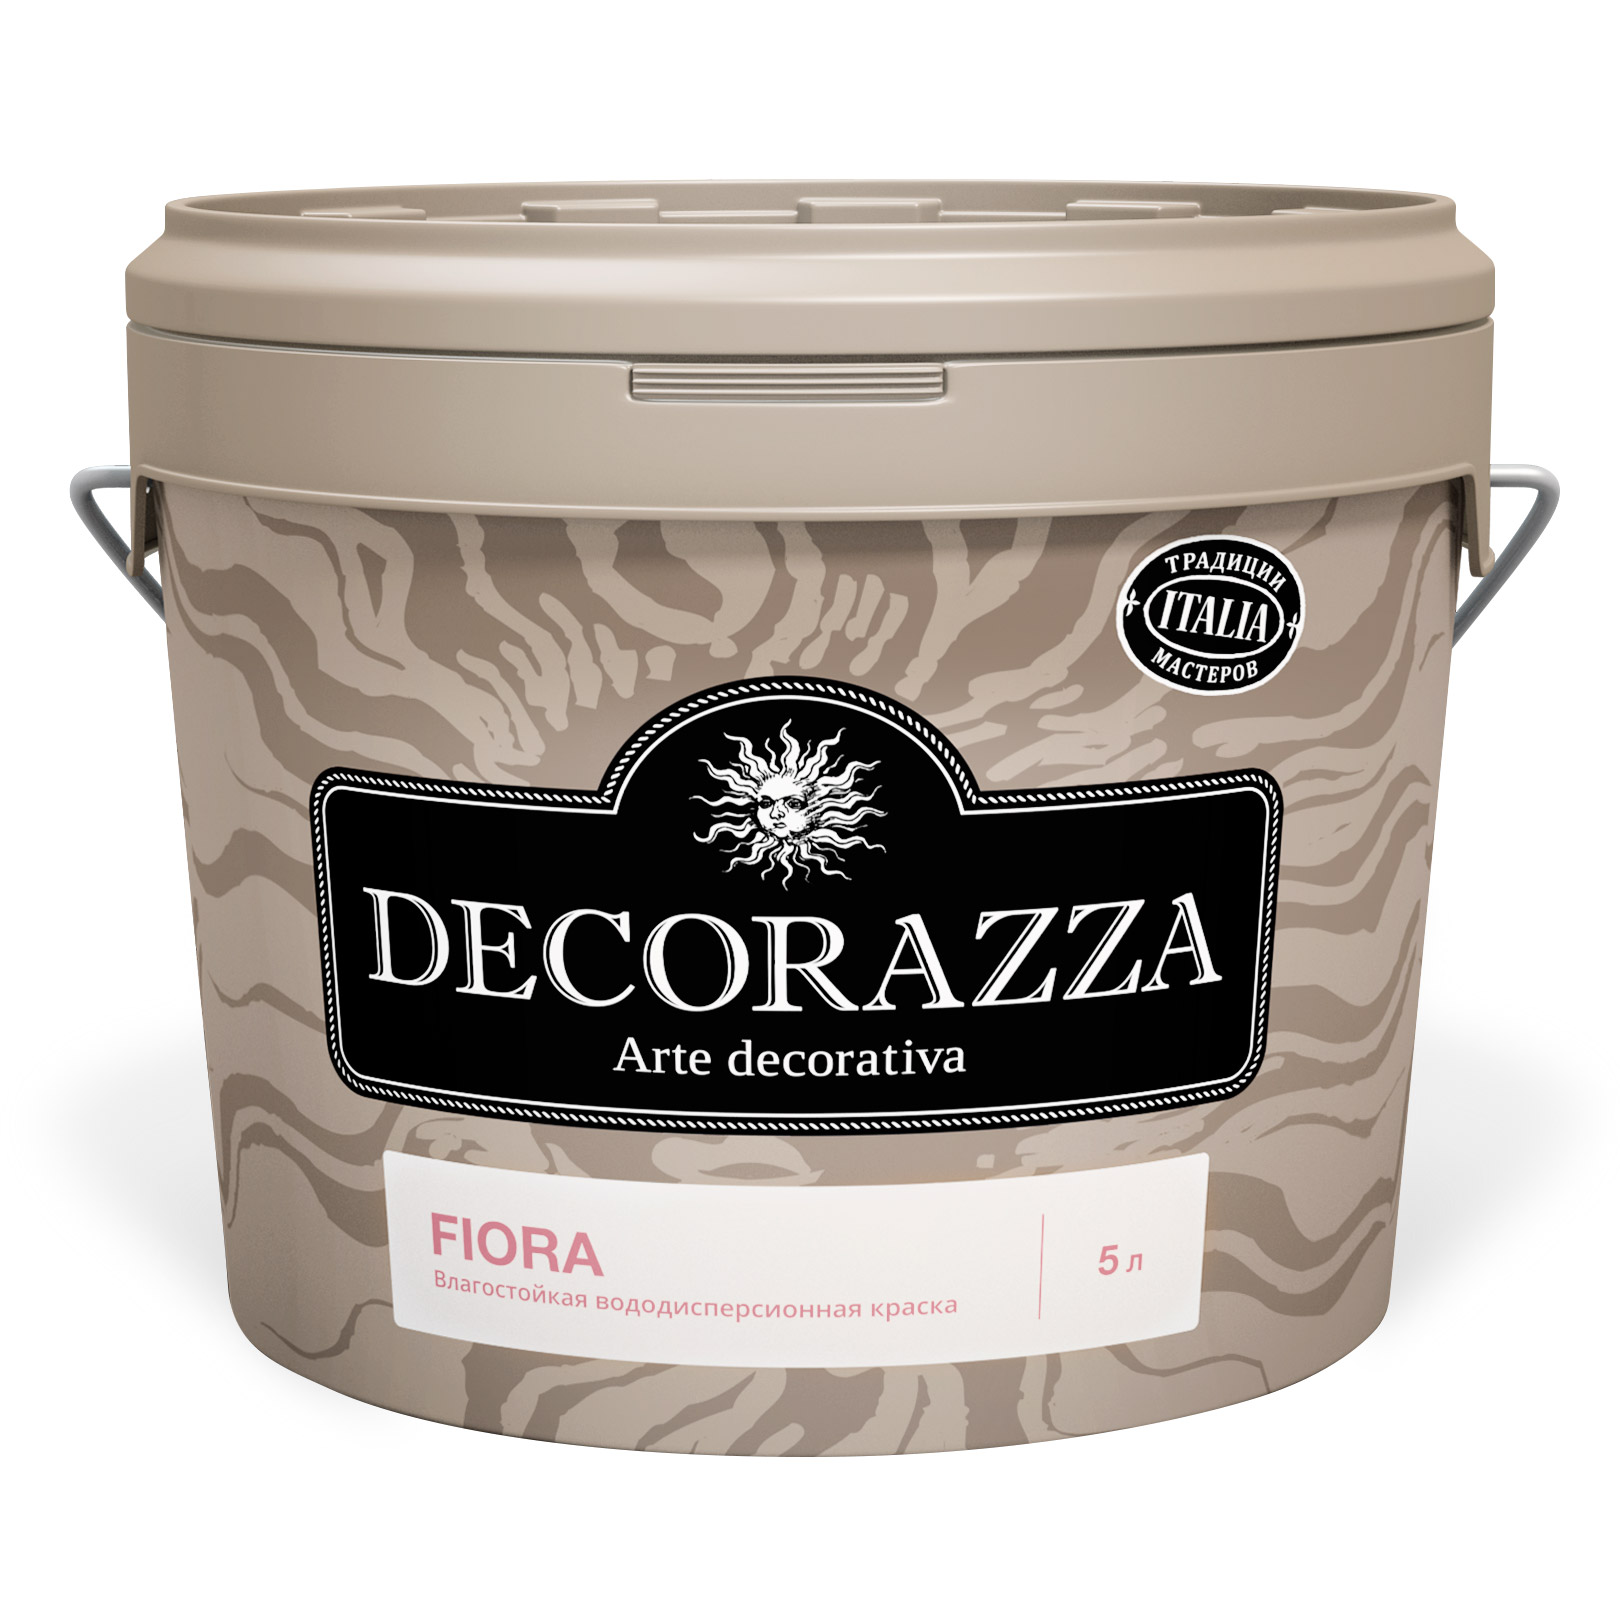 Краска Decorazza Fiora база A вододисперсионная с высокой эксплуатационной нагрузкой 2.7 кг (DFA-038/027) декоративная краска decorazza seta oro 1 0кг